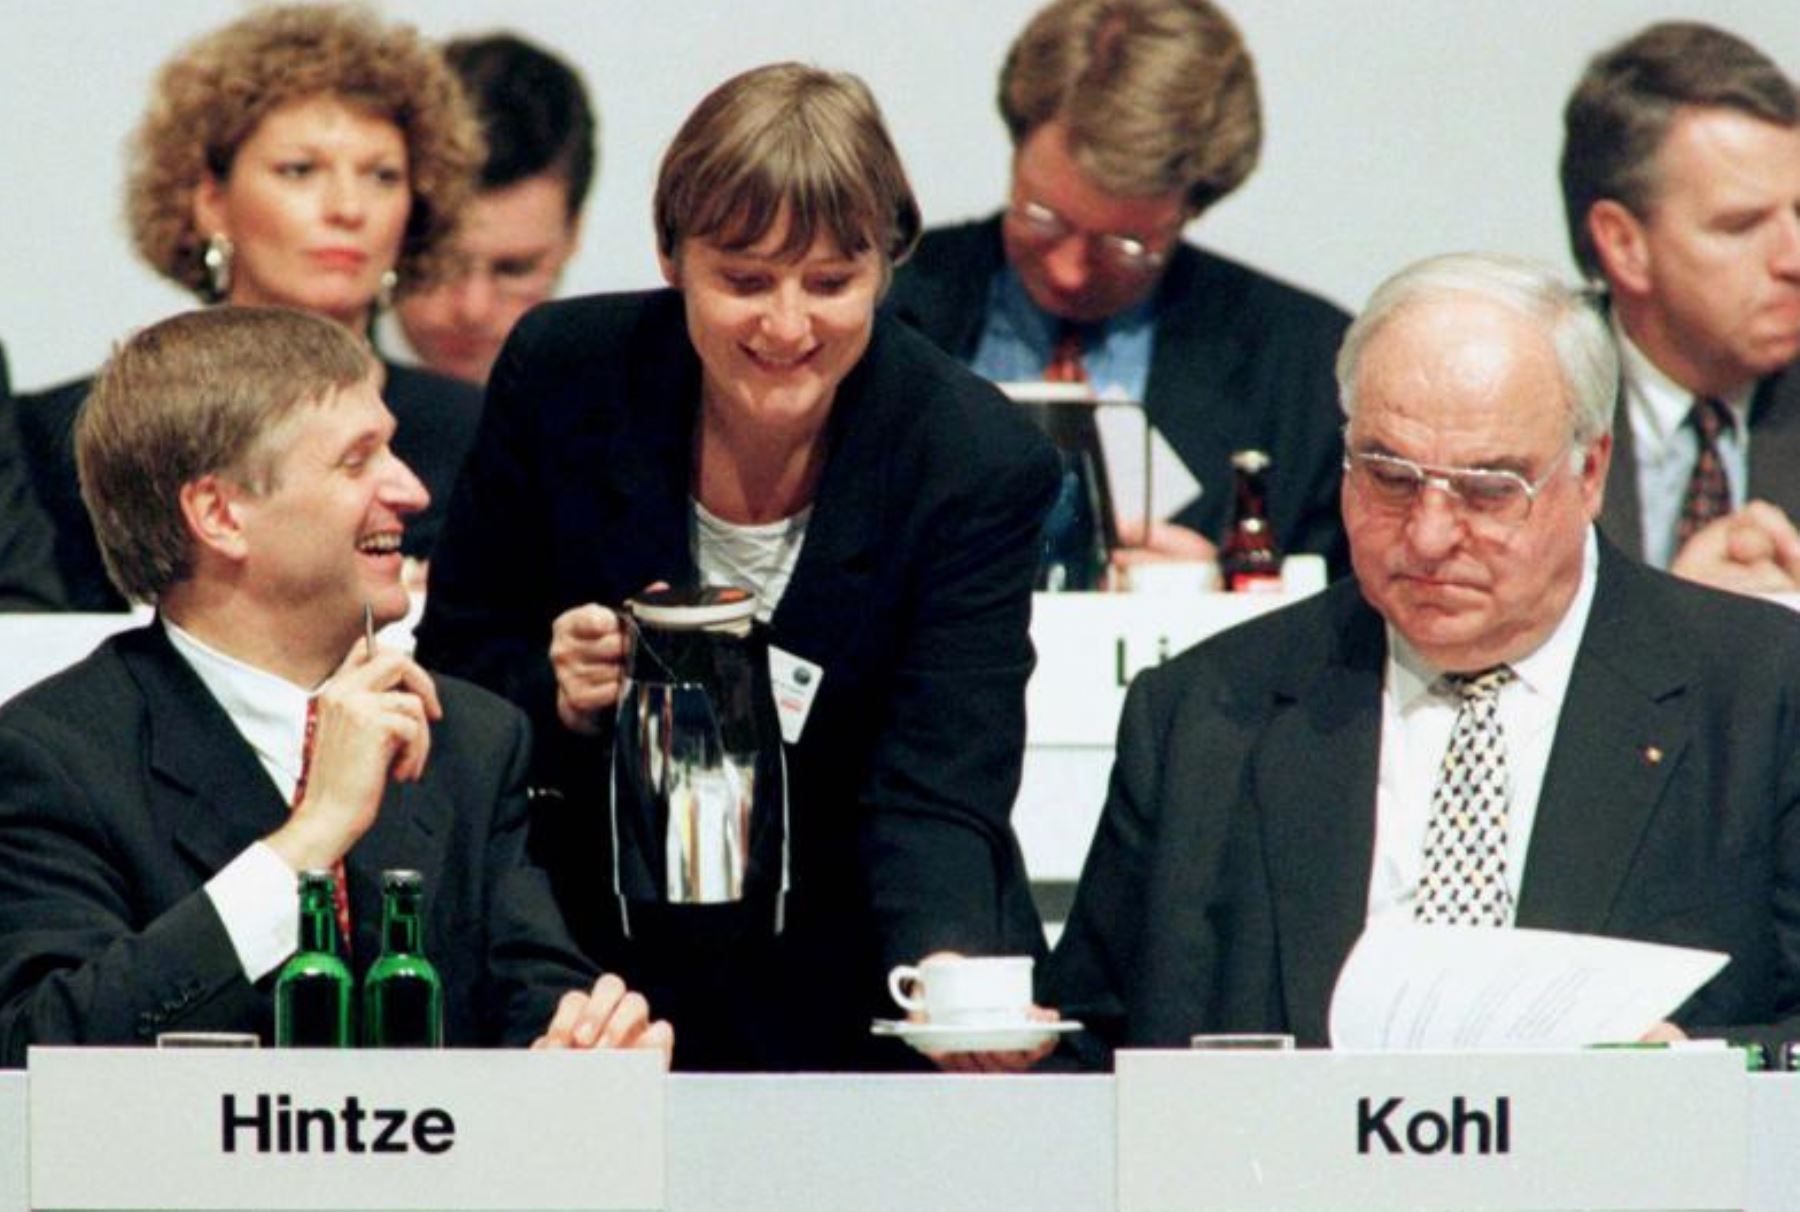 Ministra del Medio Ambiente, Angela Merkel sirve un café al canciller alemán y líder de la CDU Helmut Kohl (derecha) y secretario del partido Peter Hintze (izquierda) en la CDU (Unión Demócrata Cristiana) congreso anual del partido el 21 de octubre de 1996. INTERNET/Medios